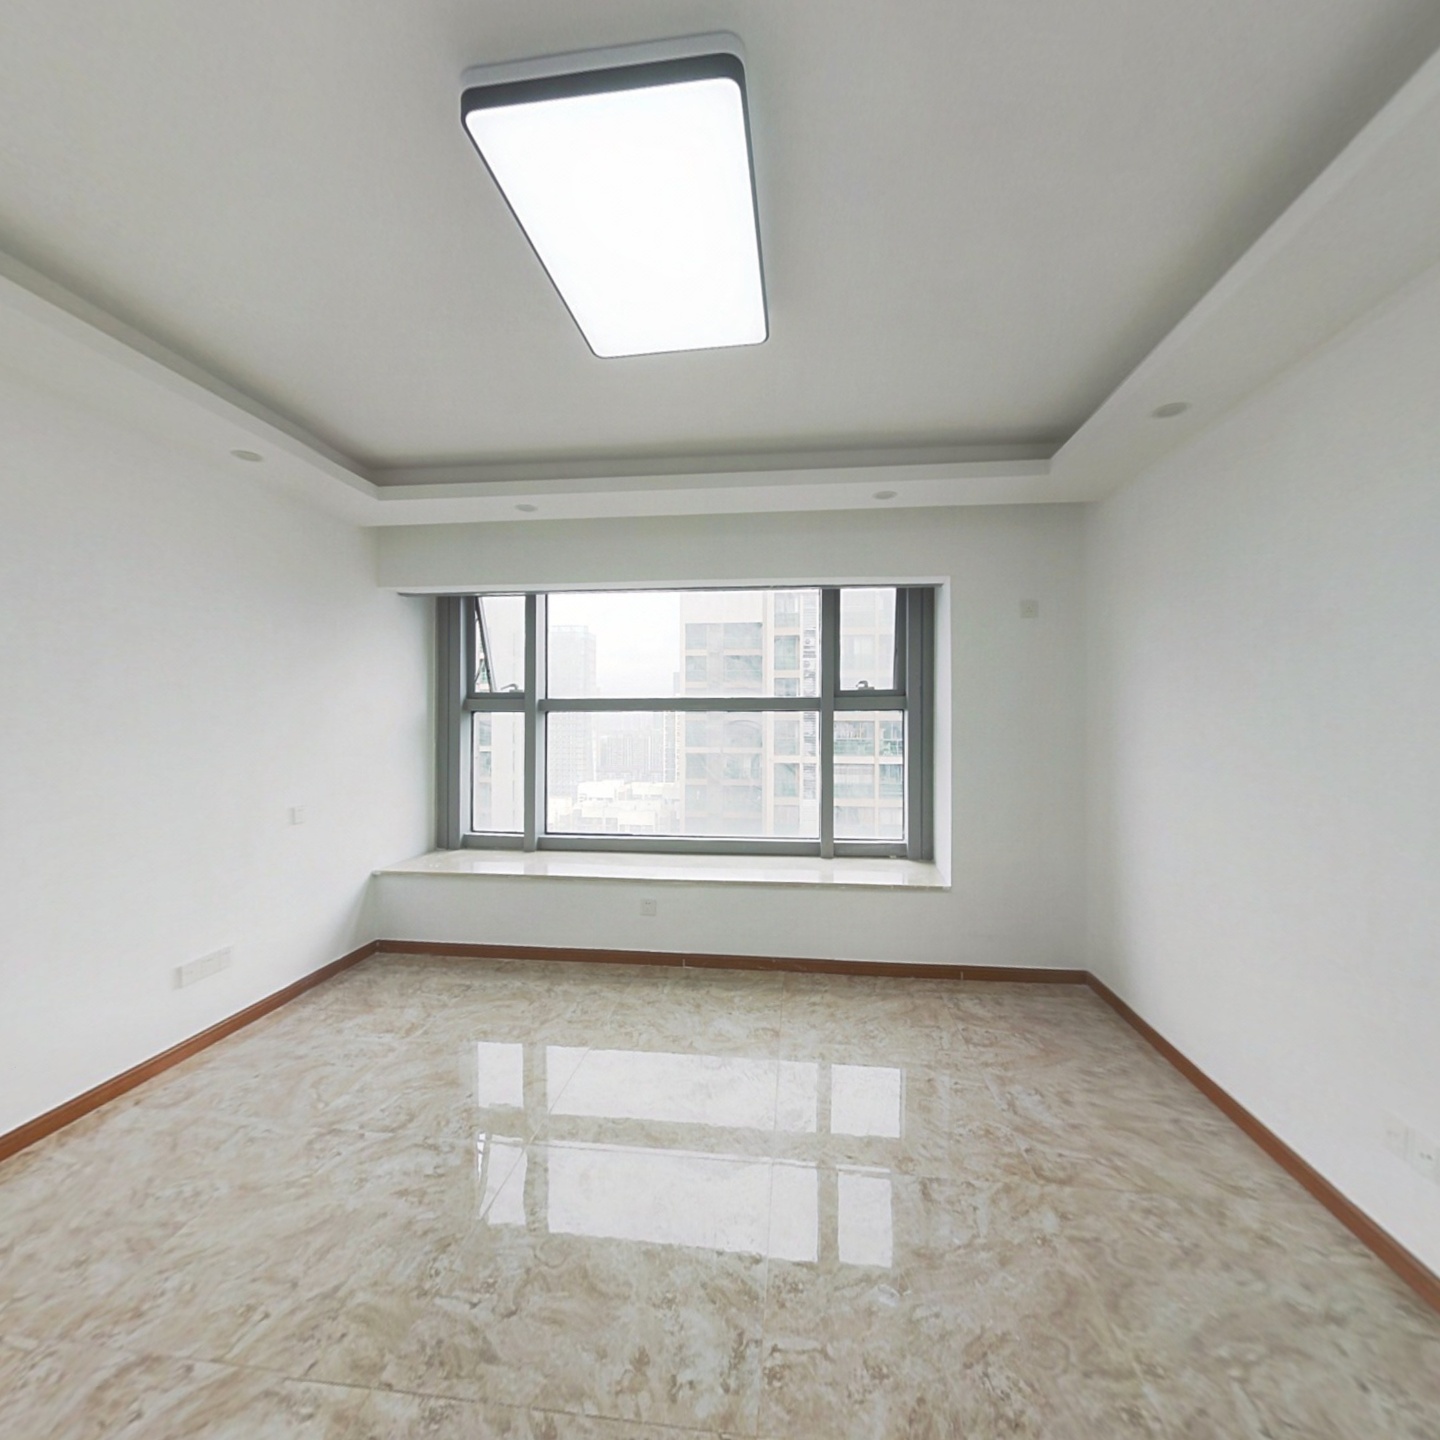 金融城 地铁口公寓 5.5米高 可办公可居住 随时看房